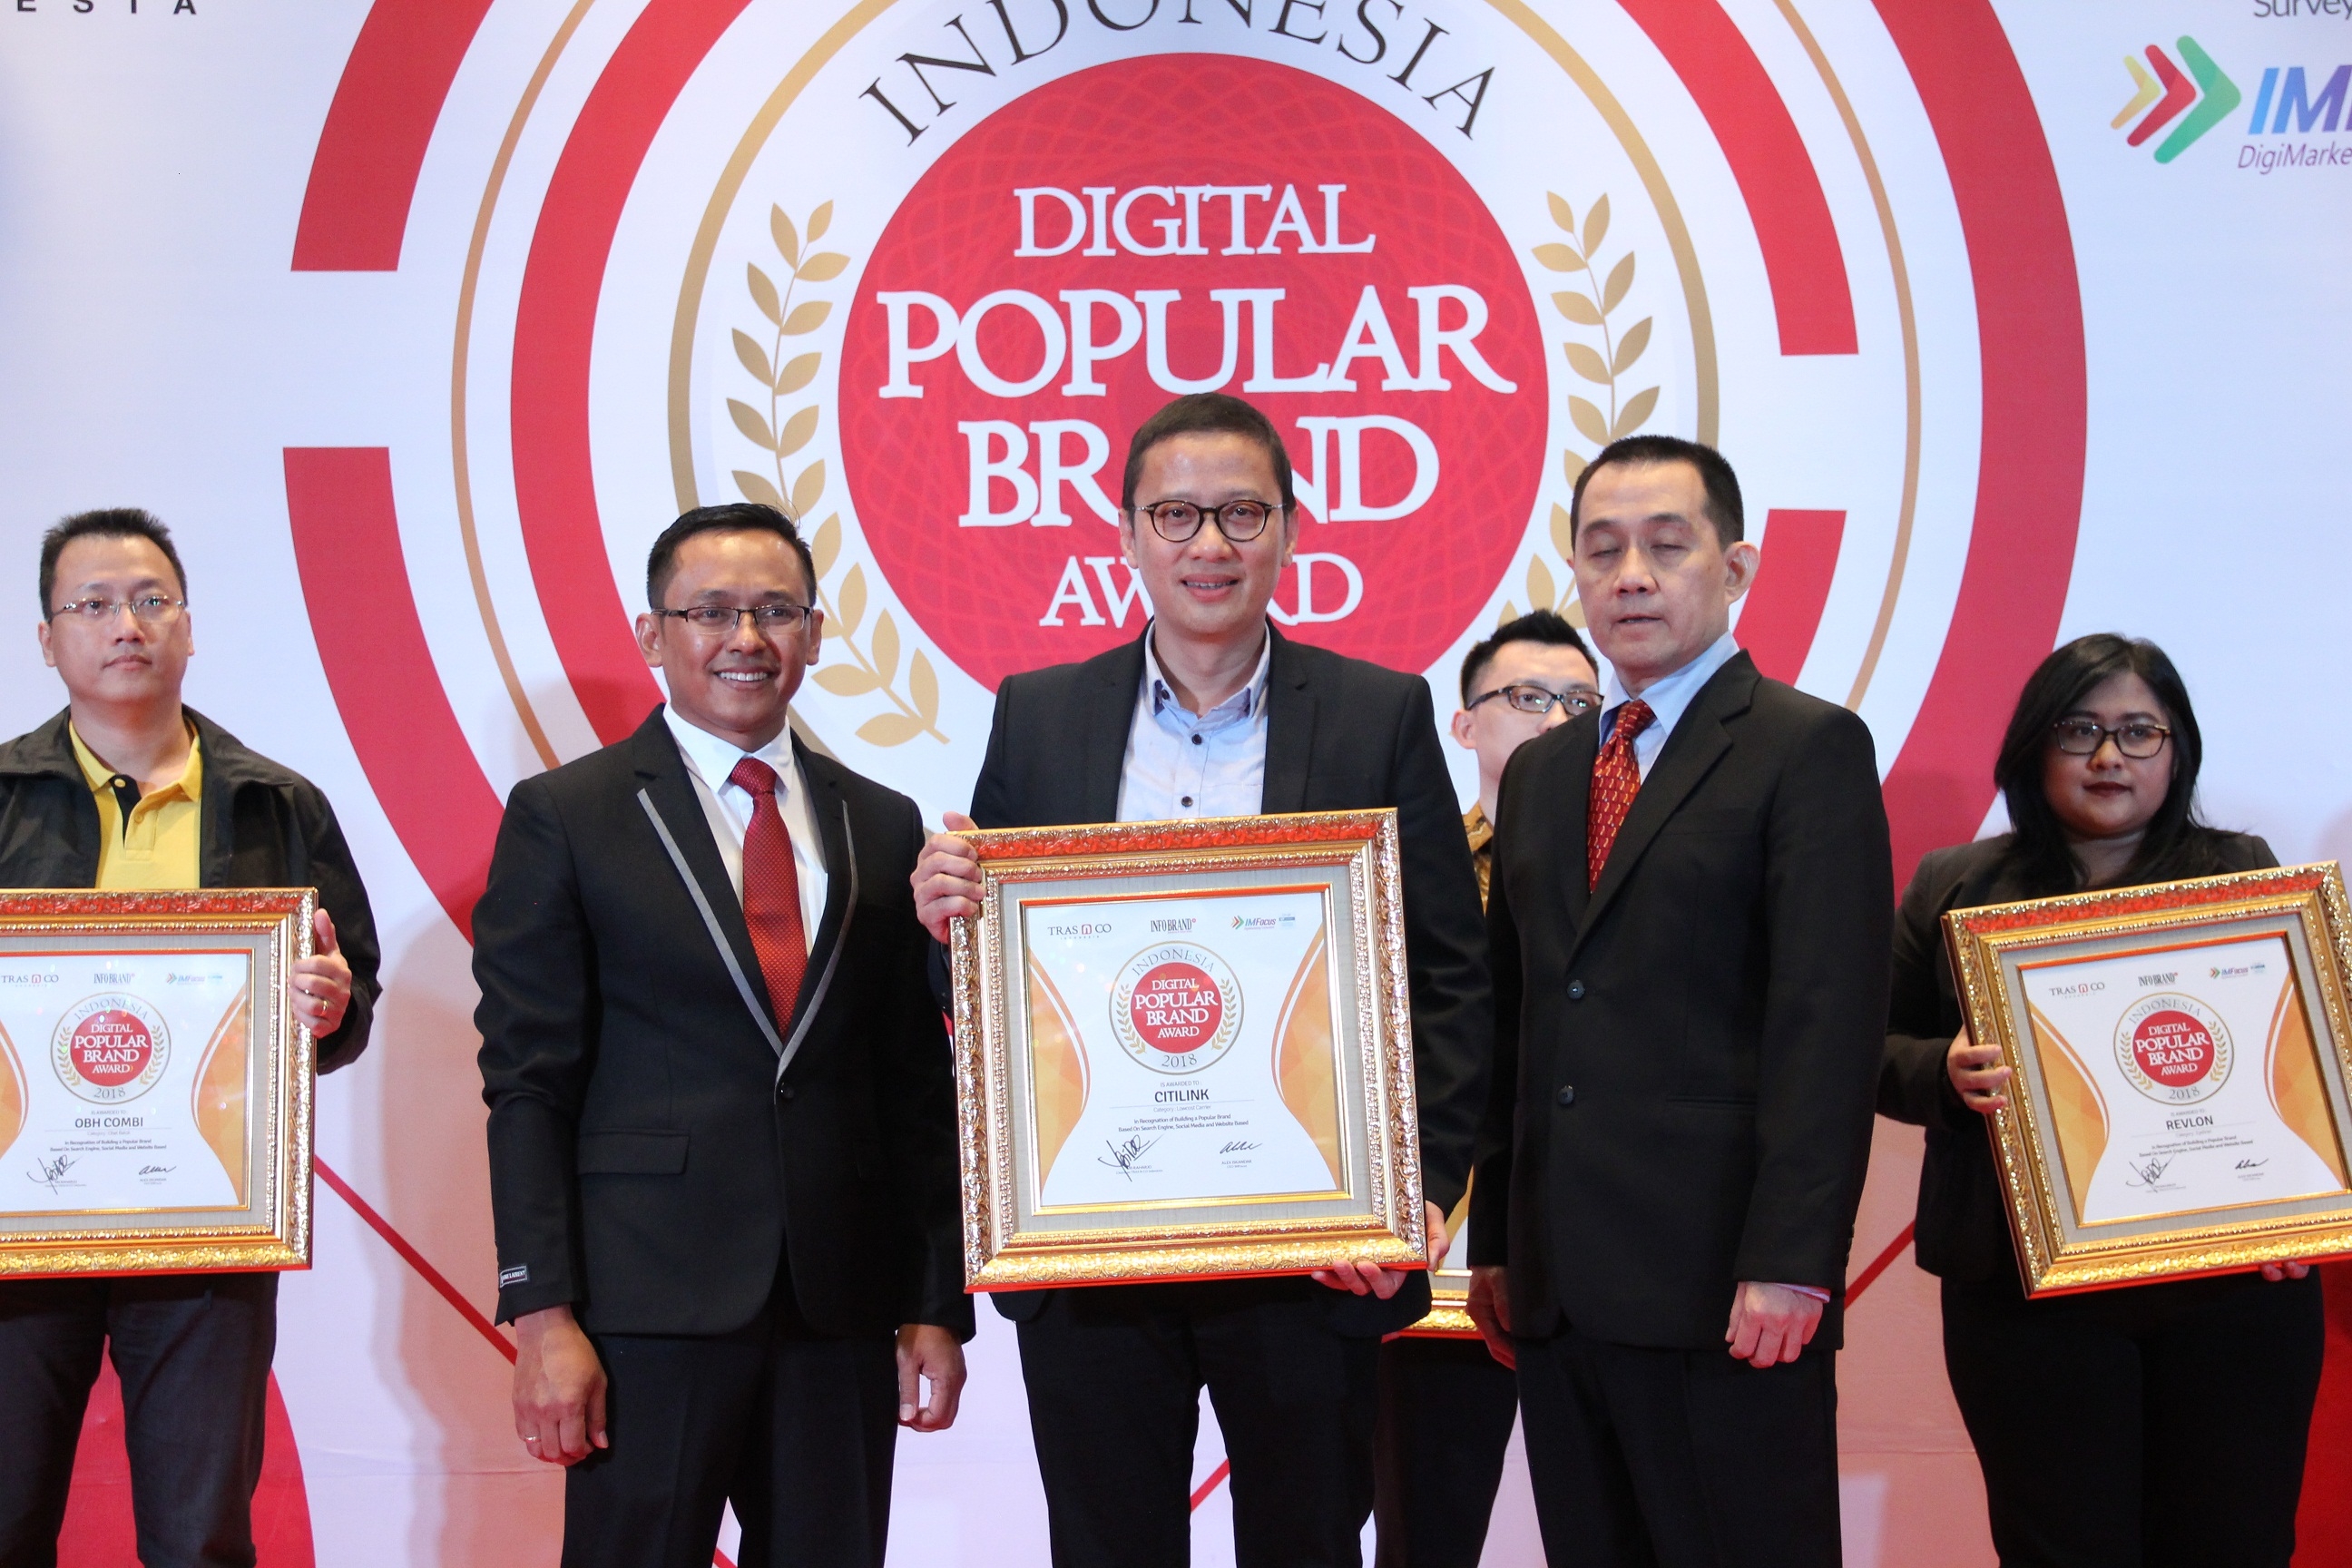 Keaktifannya Di Dunia Digital, Citilink Dapatkan Penghargaan Indonesia Digital Popular Brand Award 2018